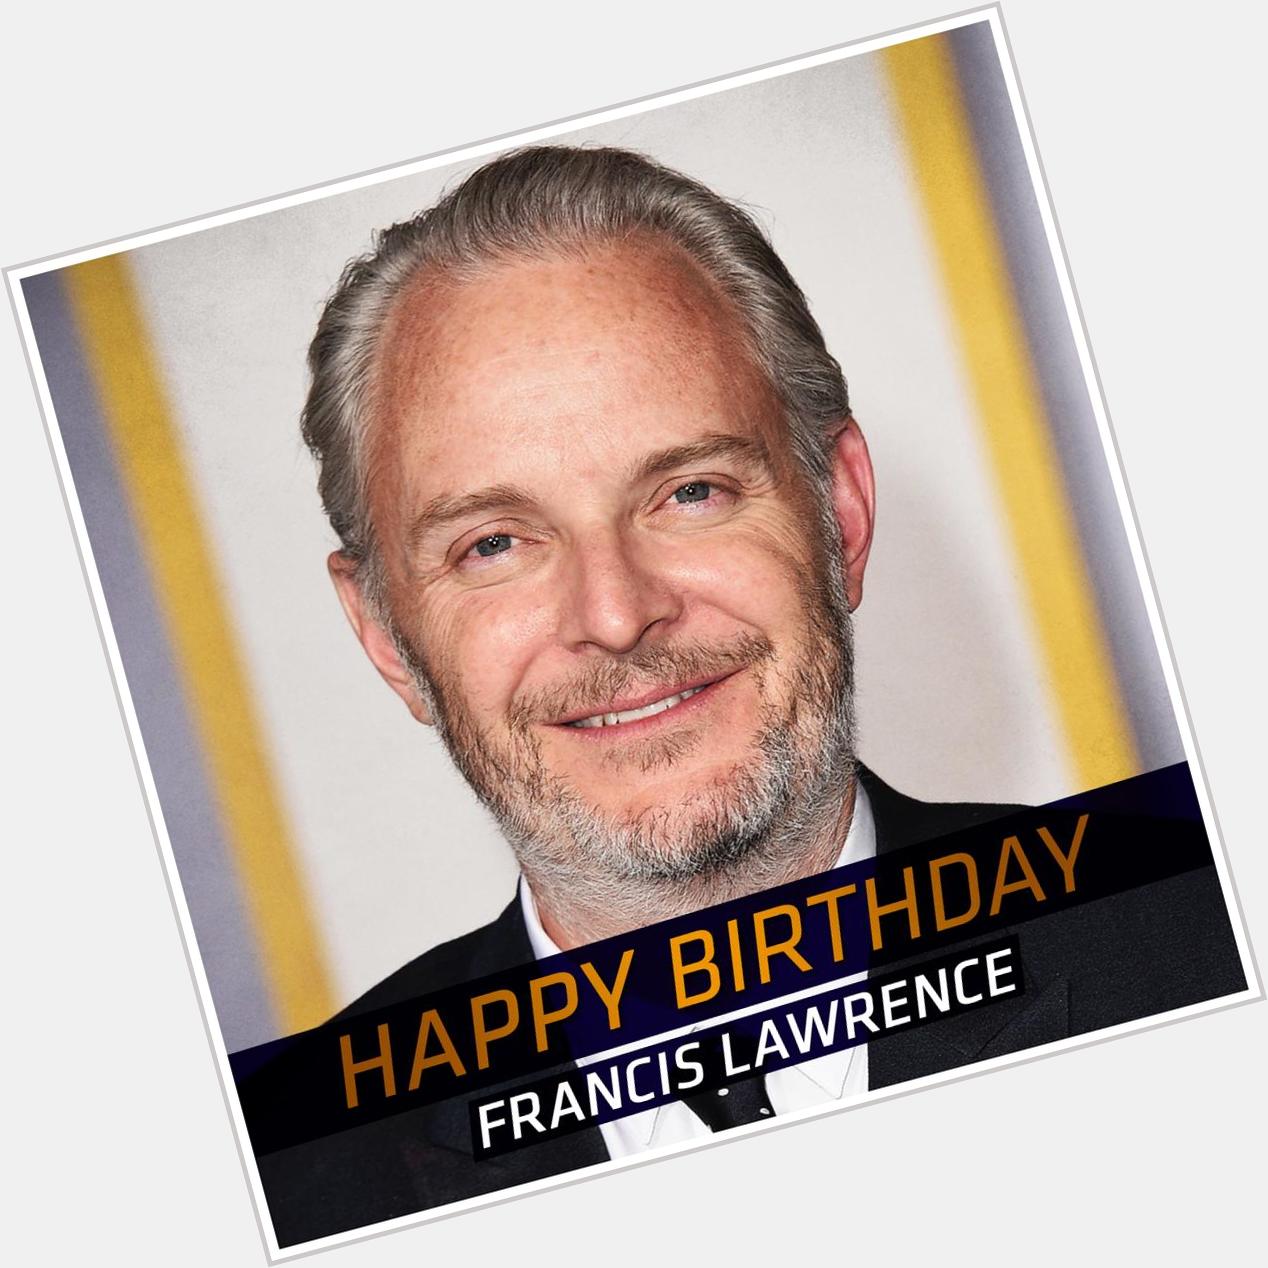 El staff de trabajo de Falsas Palabras le desea hoy el mejor de los Cumpleaños a Francis Lawrence Happy Birthday! 